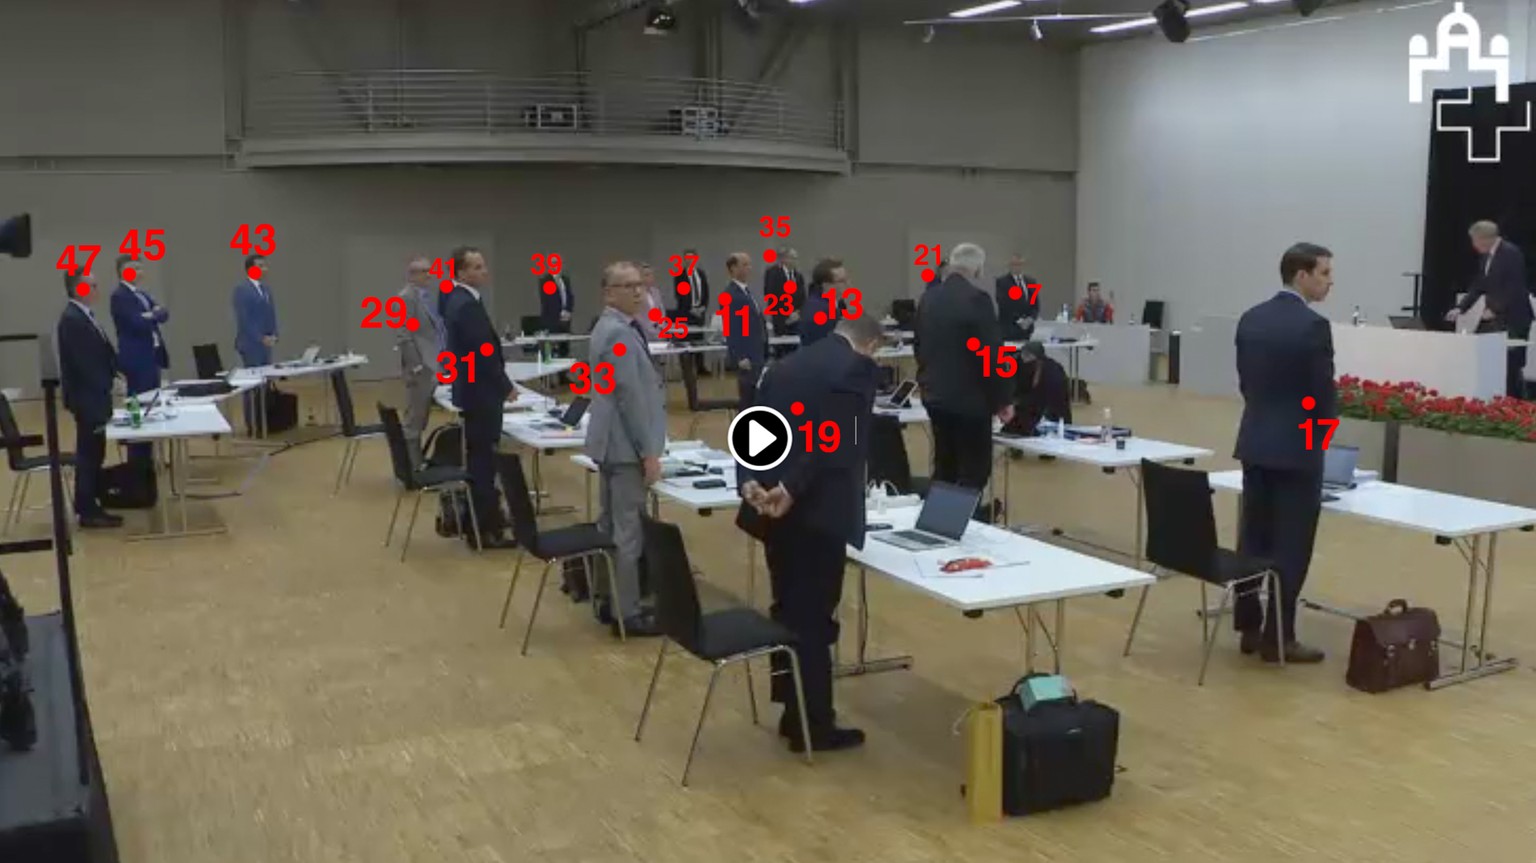 VAR aus dem Stöckli: Die Videoanalyse zeigt, wer wie abgestimmt hat.